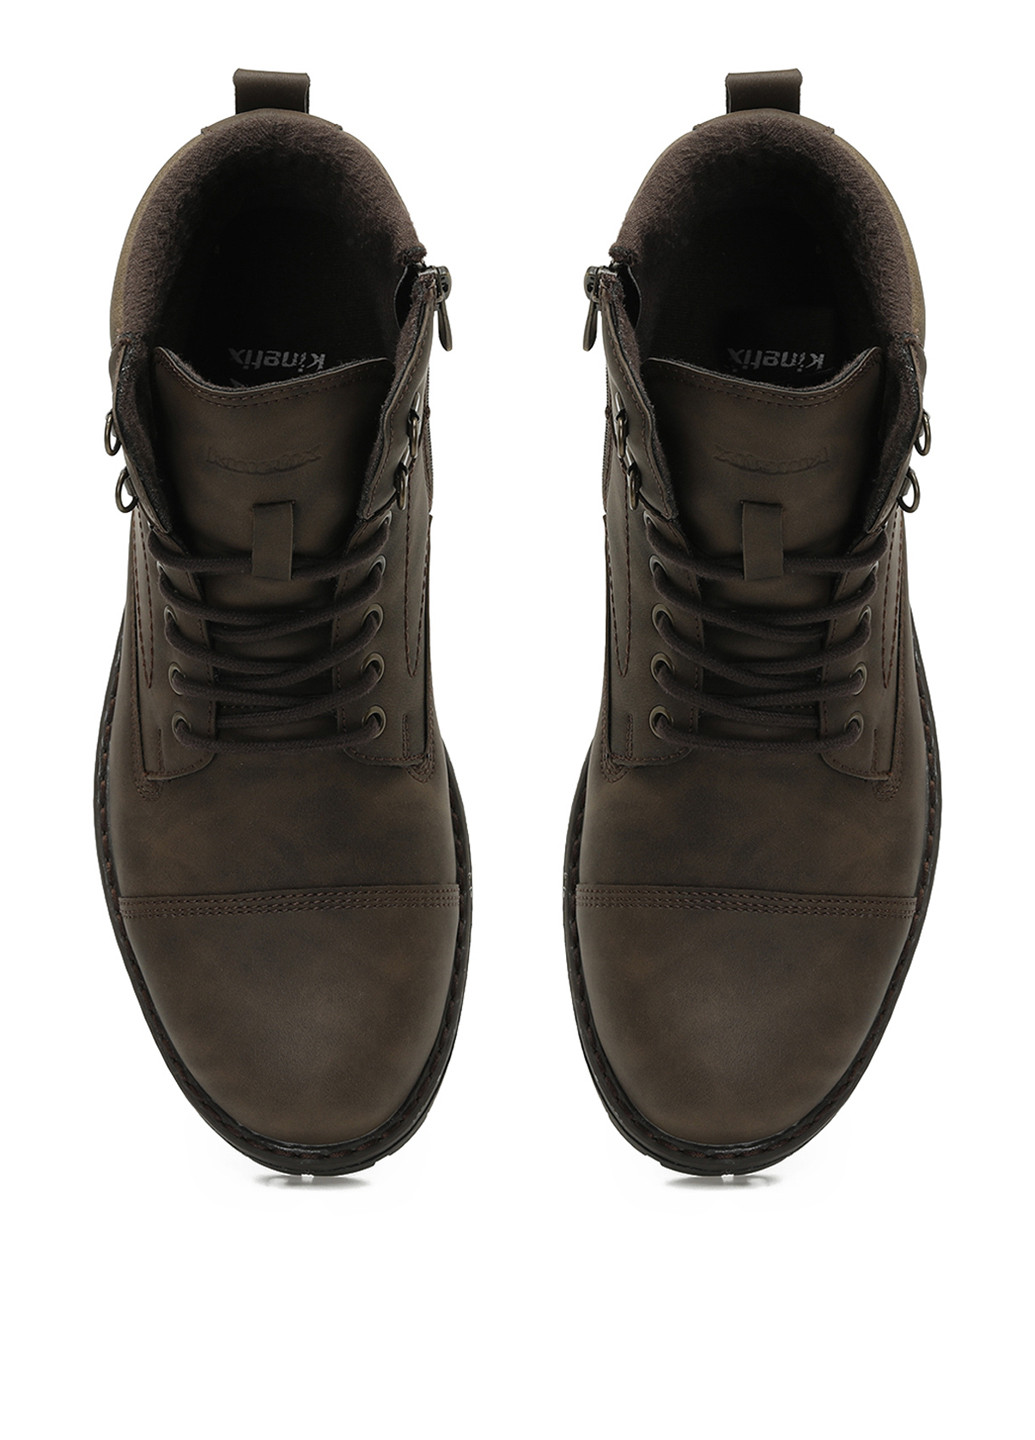 Темно-коричневые осенние ботинки берцы Kinetix